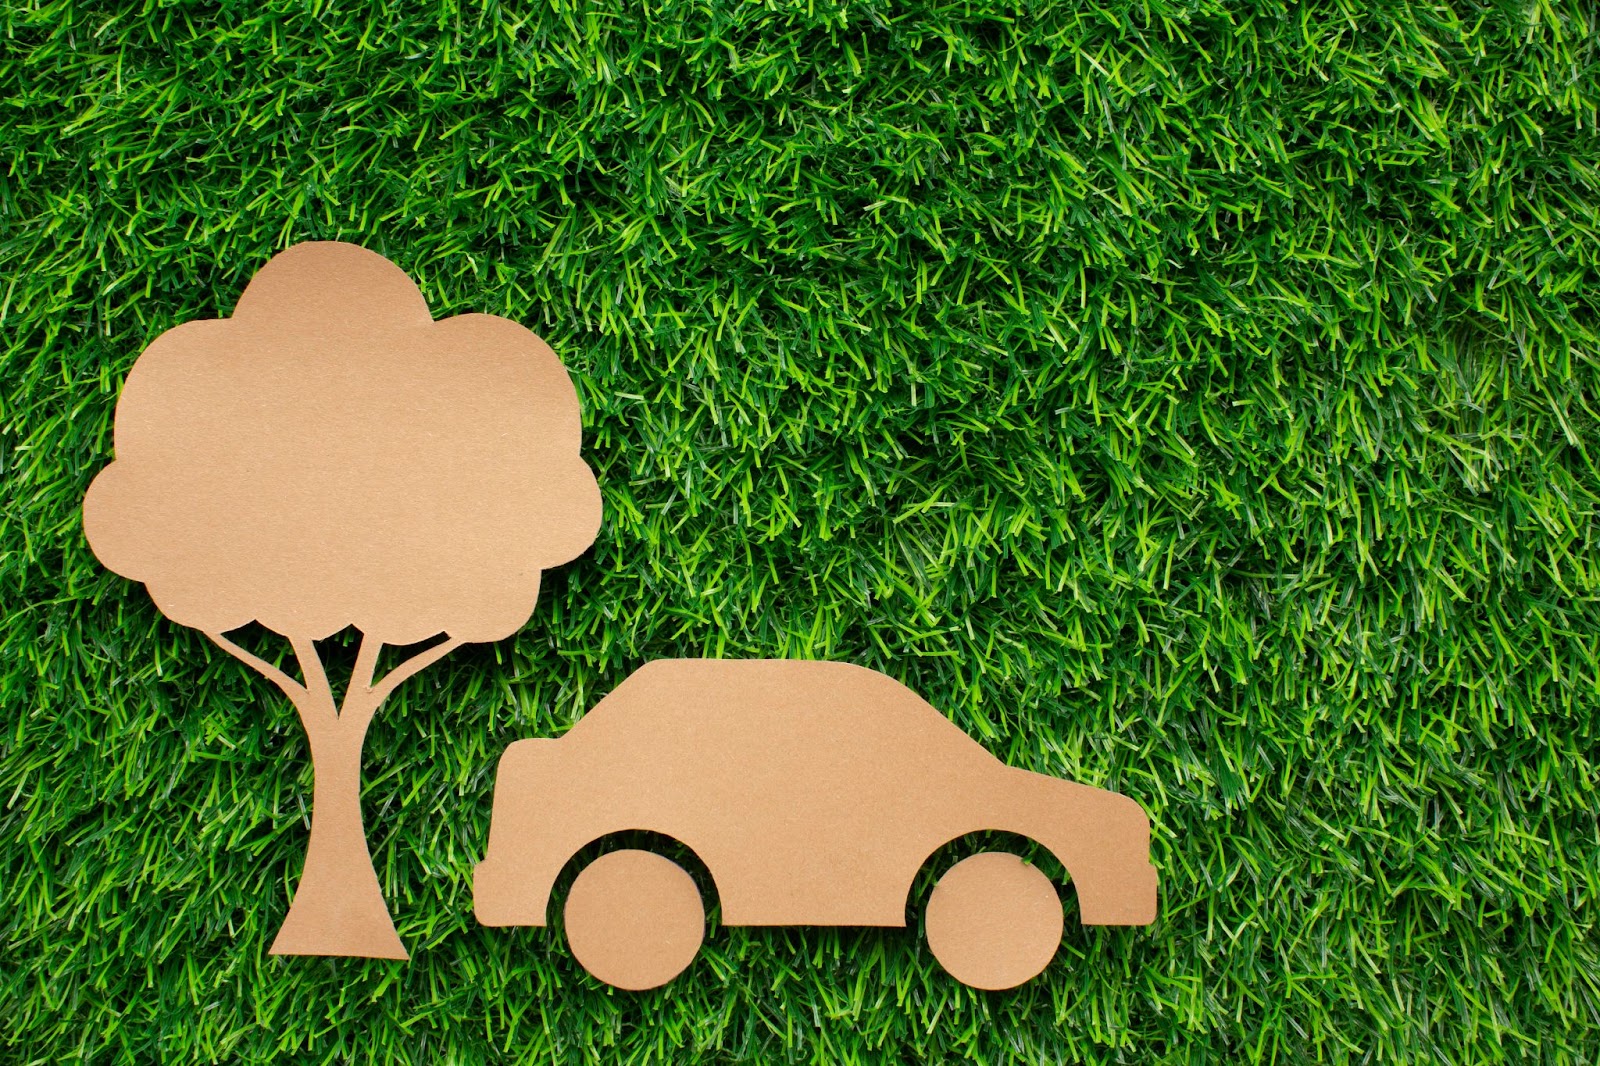 Imagem de um carro e uma árvore recortados em material de papelão em cima da grama representando a mobilidade urbana sustentável.